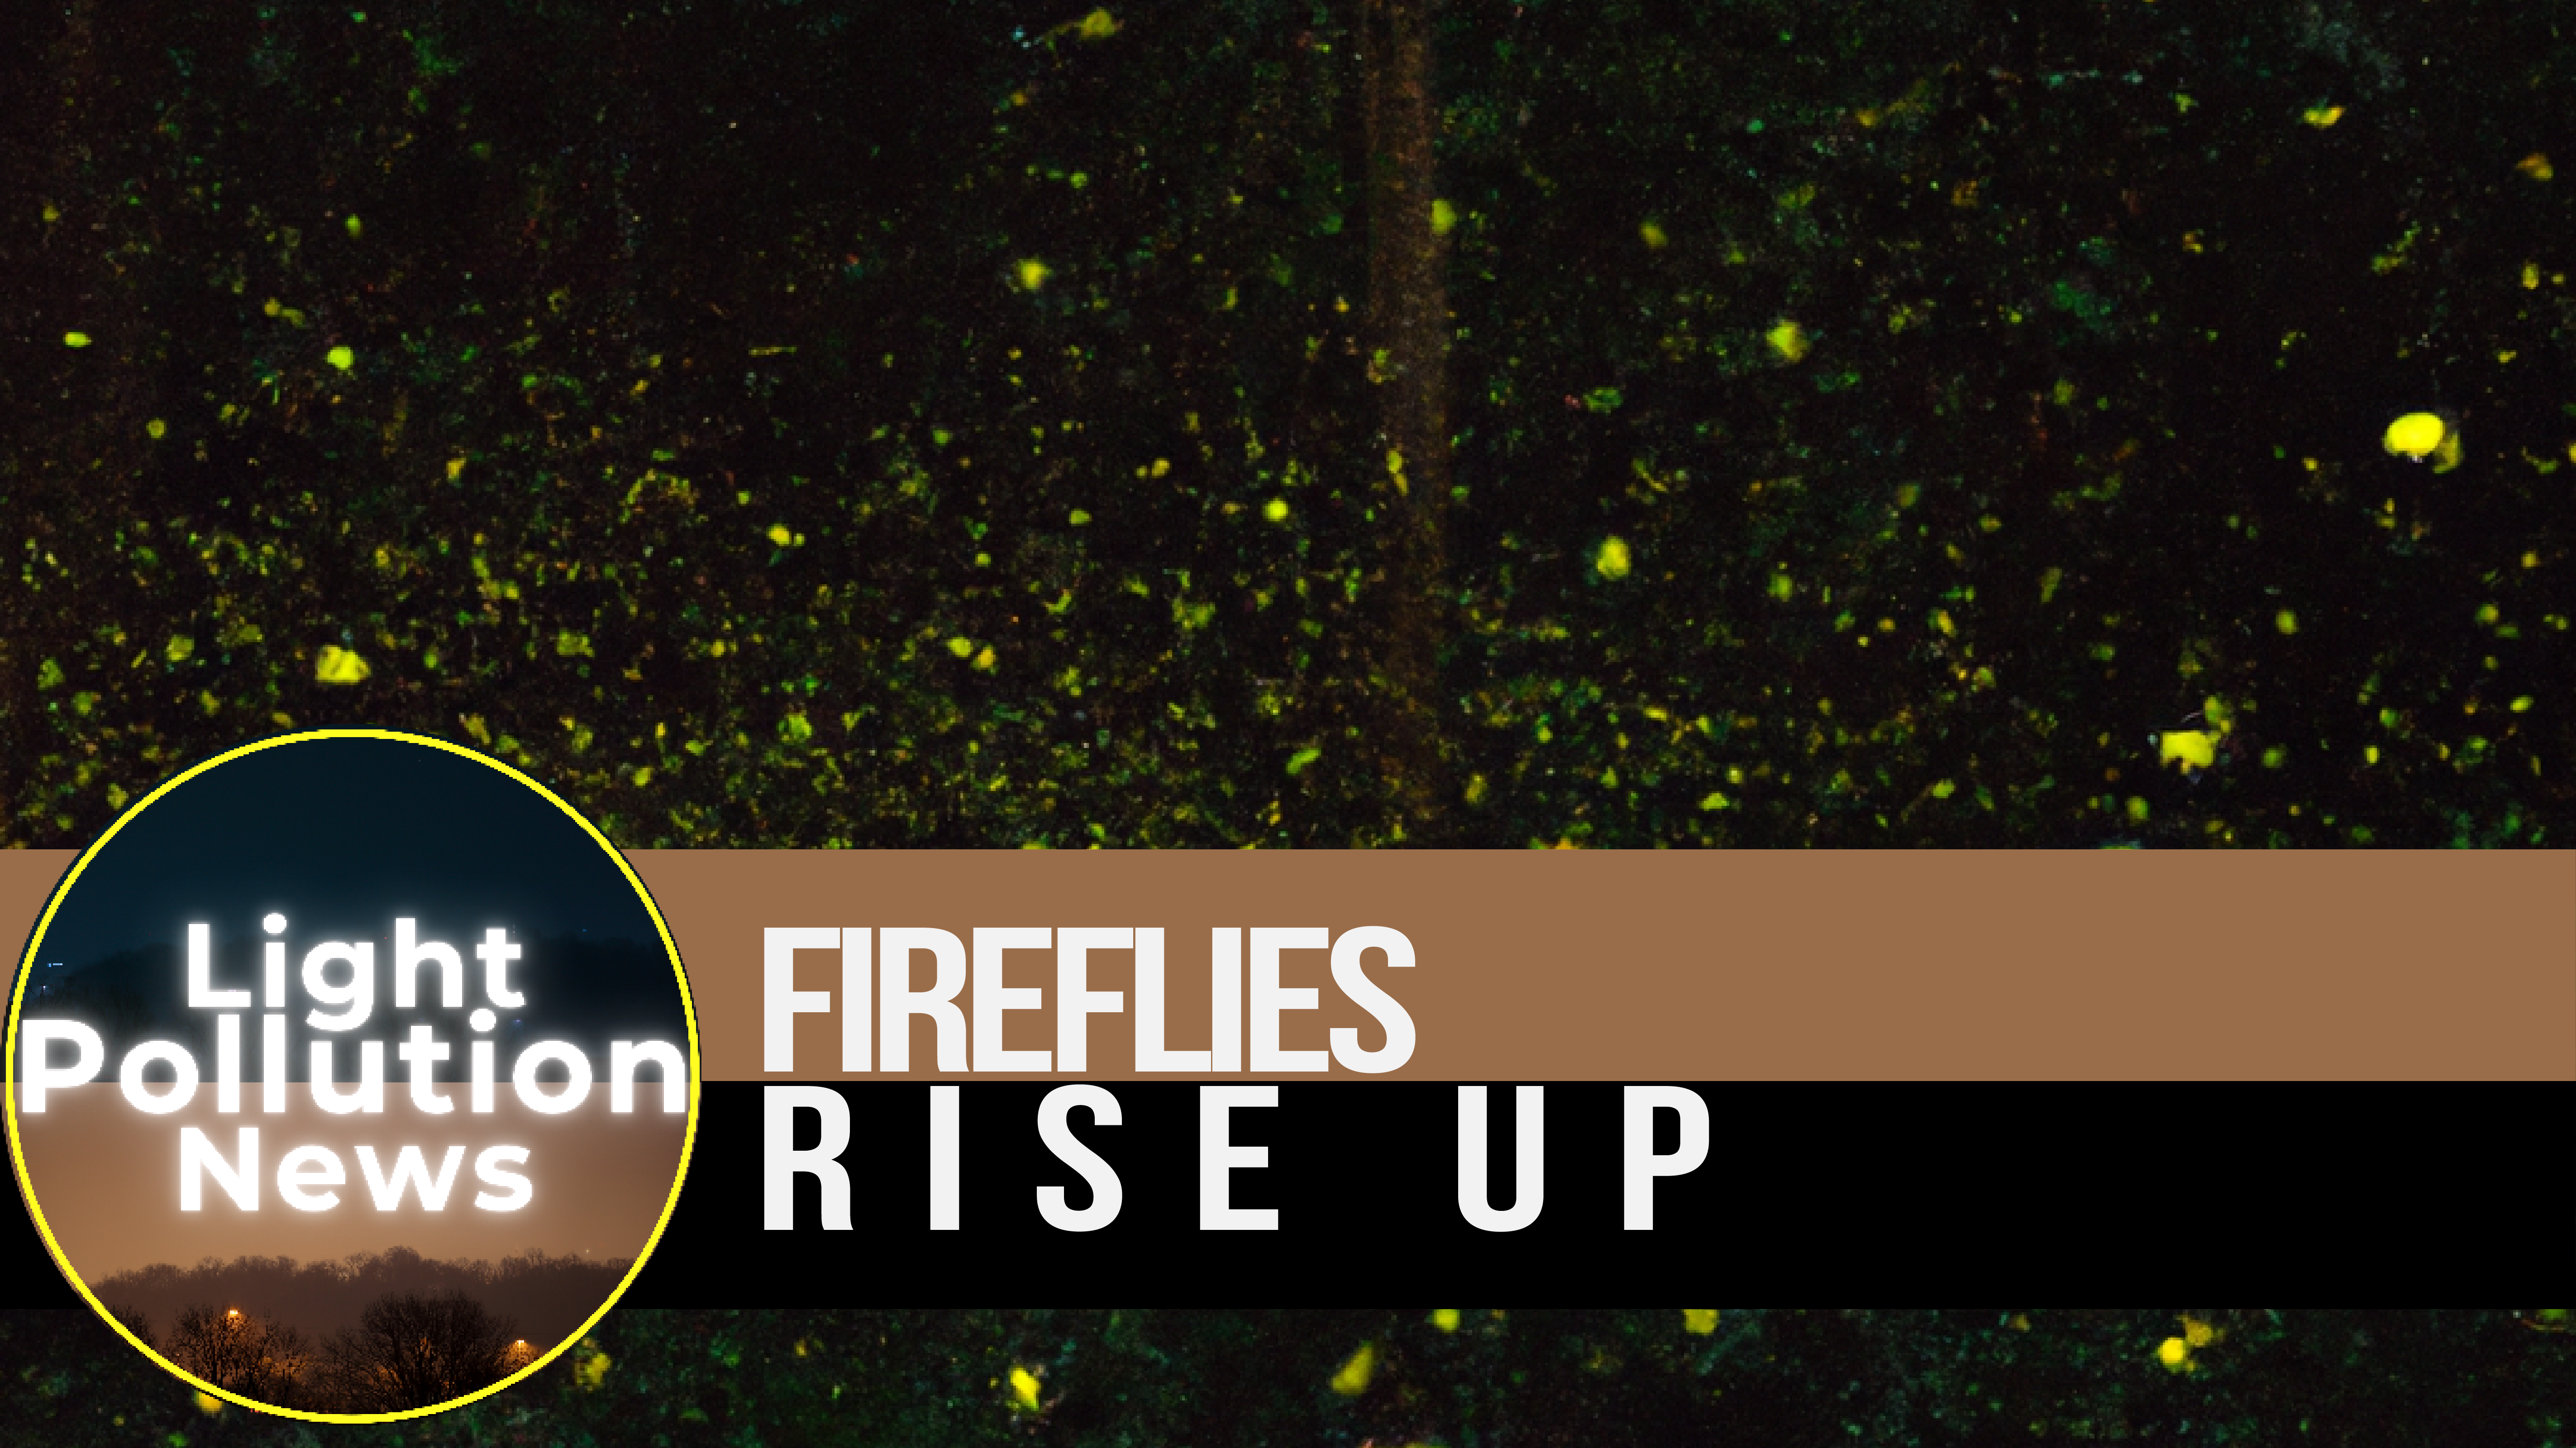 Fireflies, Rise Up